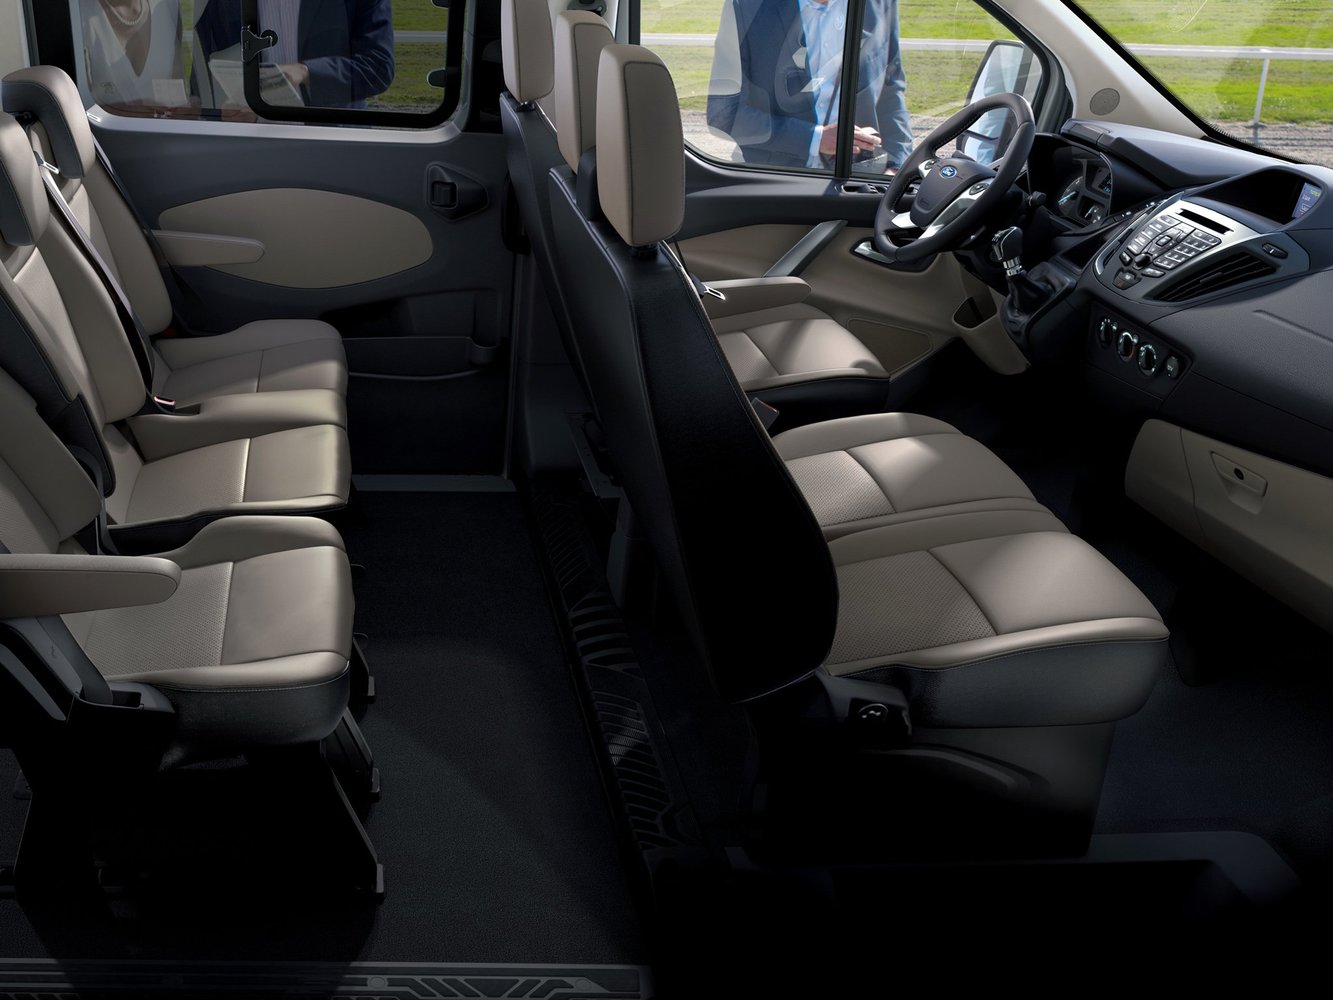 минивэн SWB Ford Tourneo Custom 2013 - 2016г выпуска модификация Limited 2.2 MT (125 л.с.)